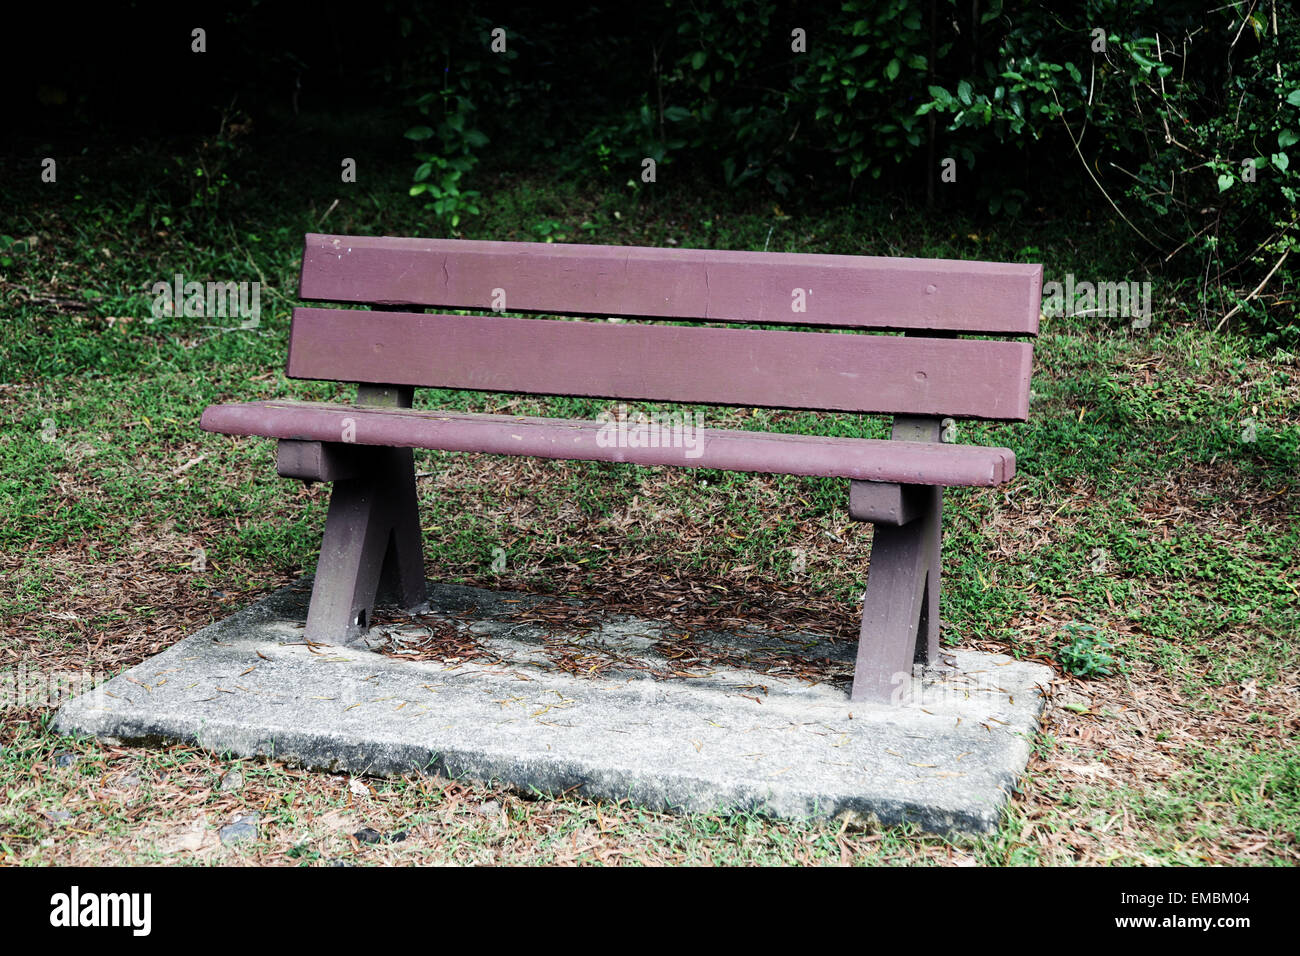 C'est une photo d'un banc public dans un jardin ou parc. Il n'y a personne assis sur elle. C'est piscine en plein air ou à l'extérieur. Il est en bois Banque D'Images